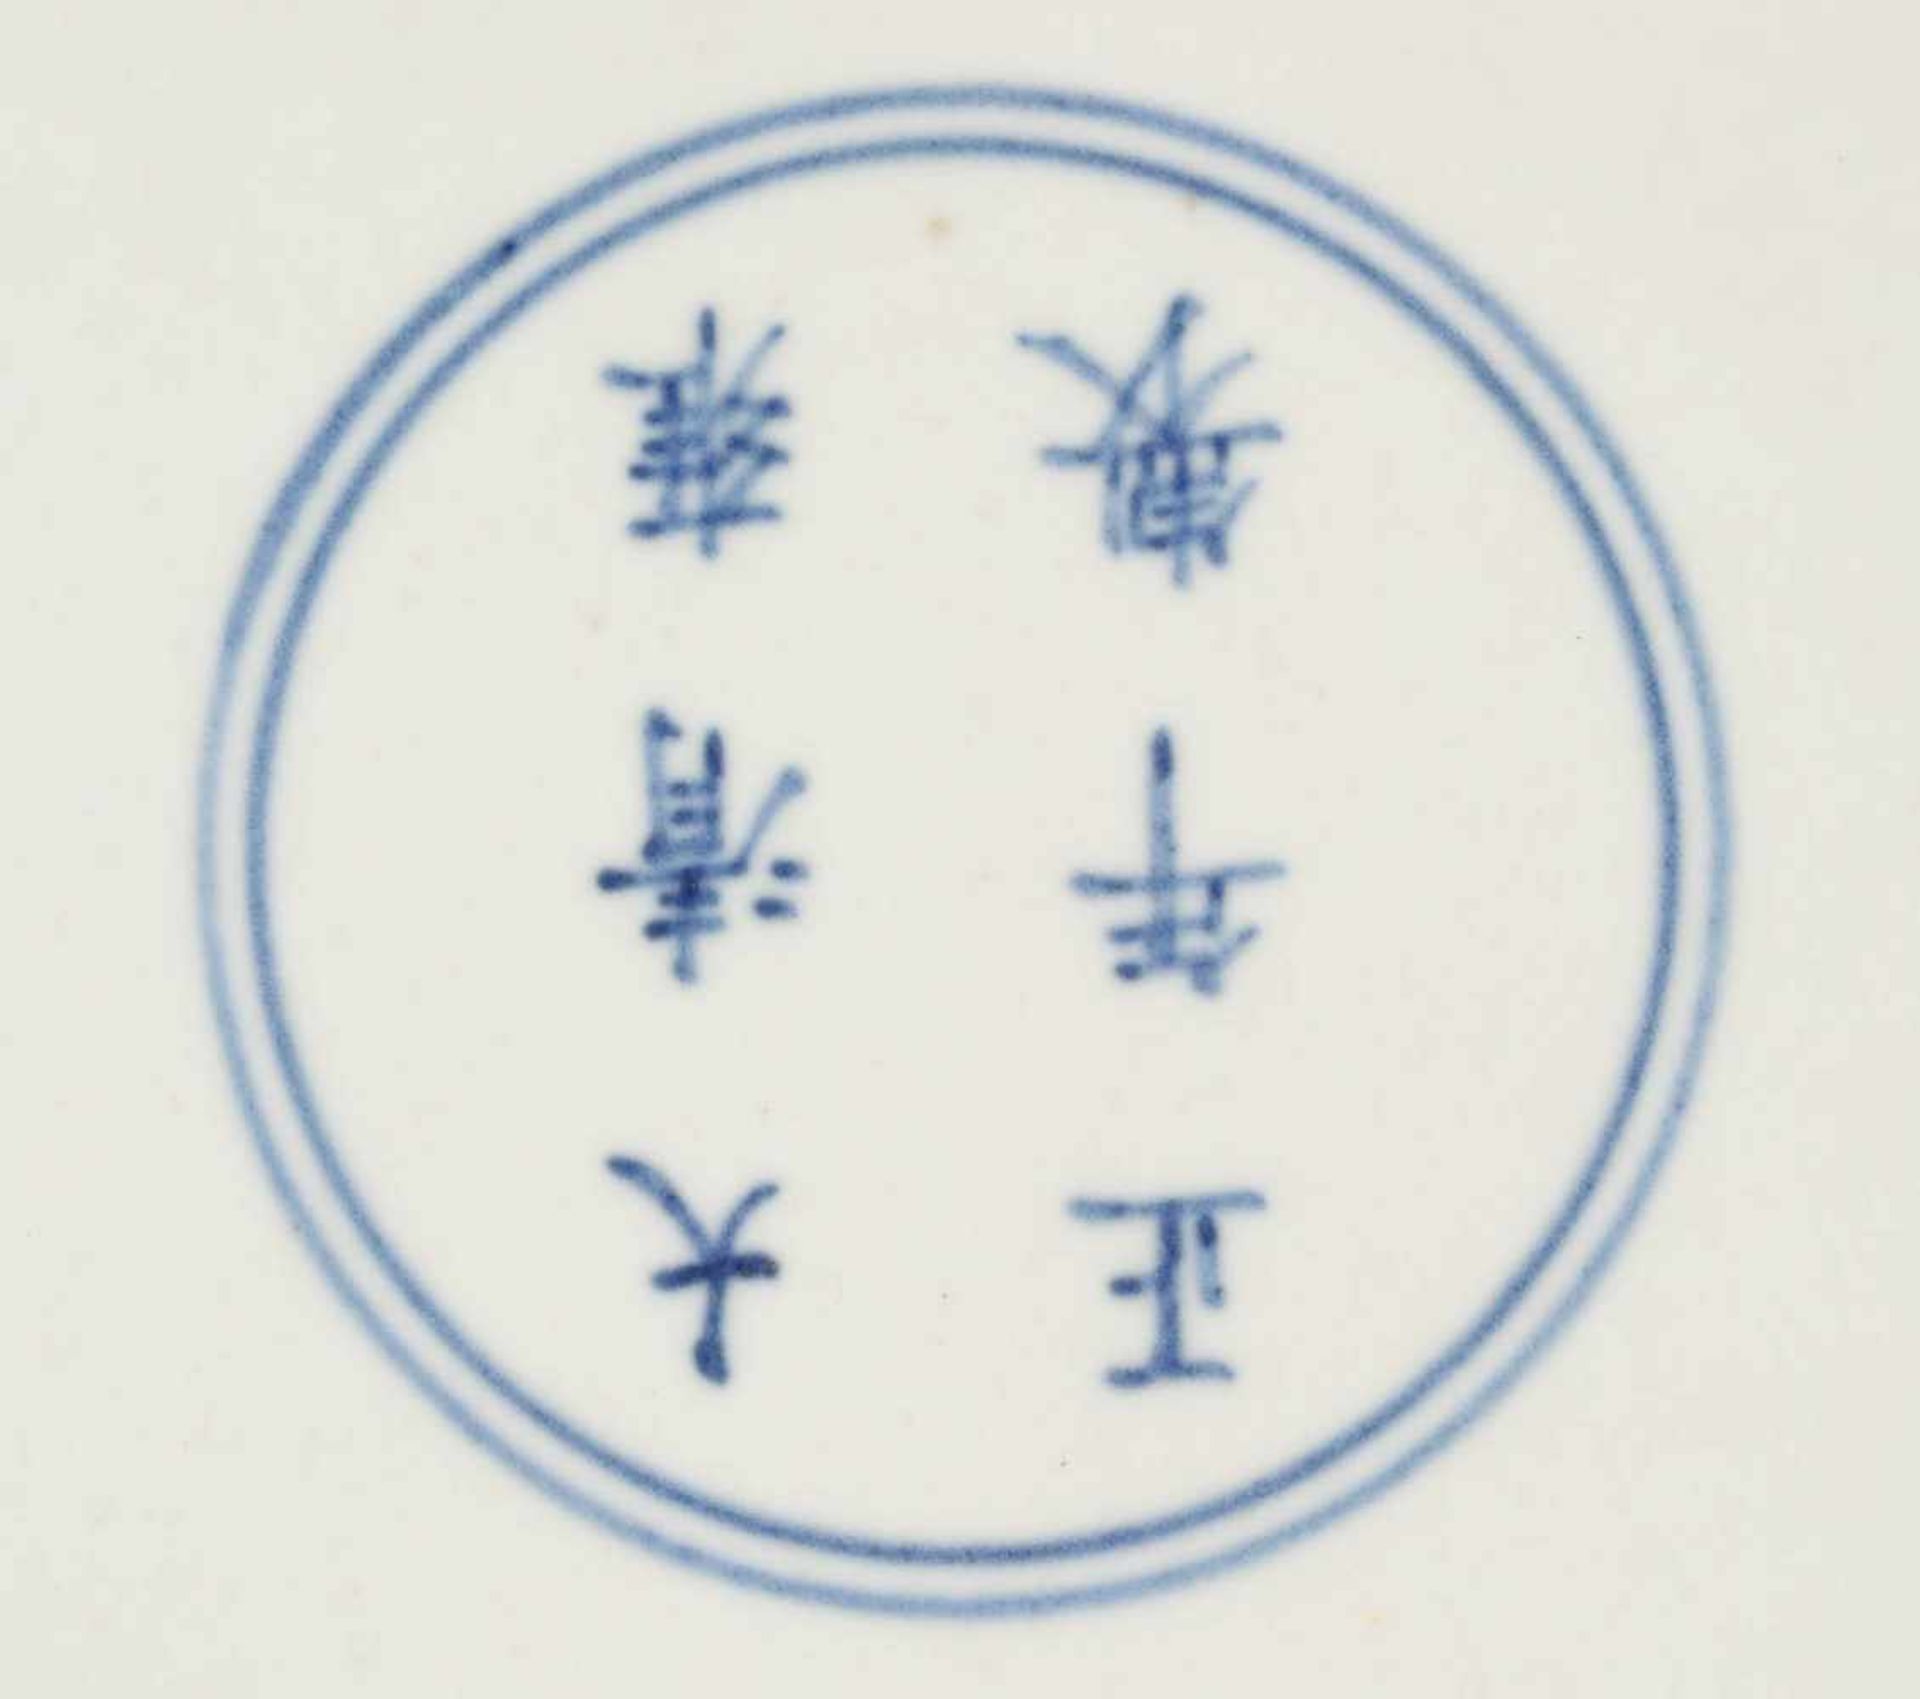 VASE MIT PFINGSTROSEN China, 19./20. Jh. Porzellan, polychrome Aufglasurbemalung. H. 41,8 cm. Im - Bild 3 aus 3